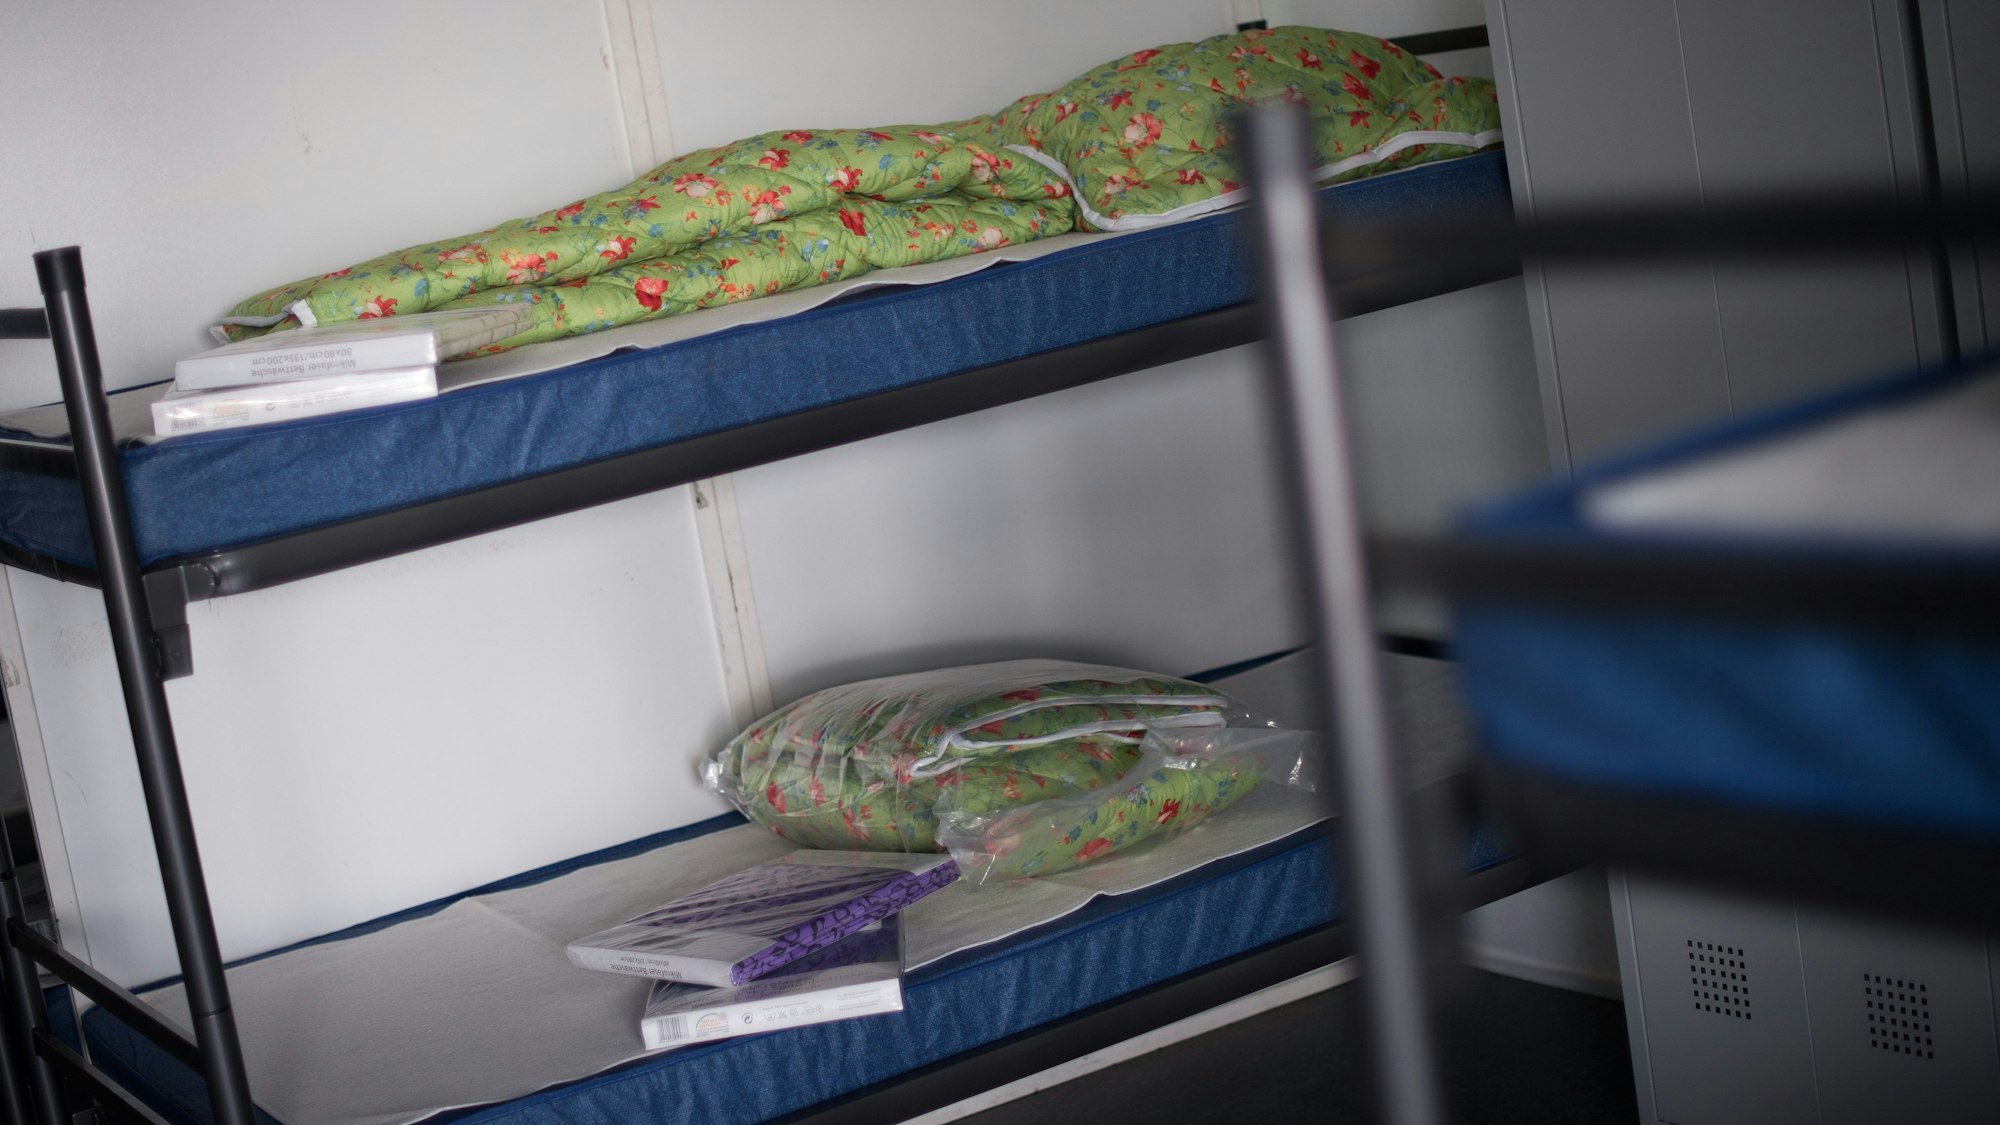 Betten für Flüchtlinge stehen am 26.08.2015 im Zelt einer Flüchtlingsunterkunft im Stadtteil Chorweiler in Köln bereit.